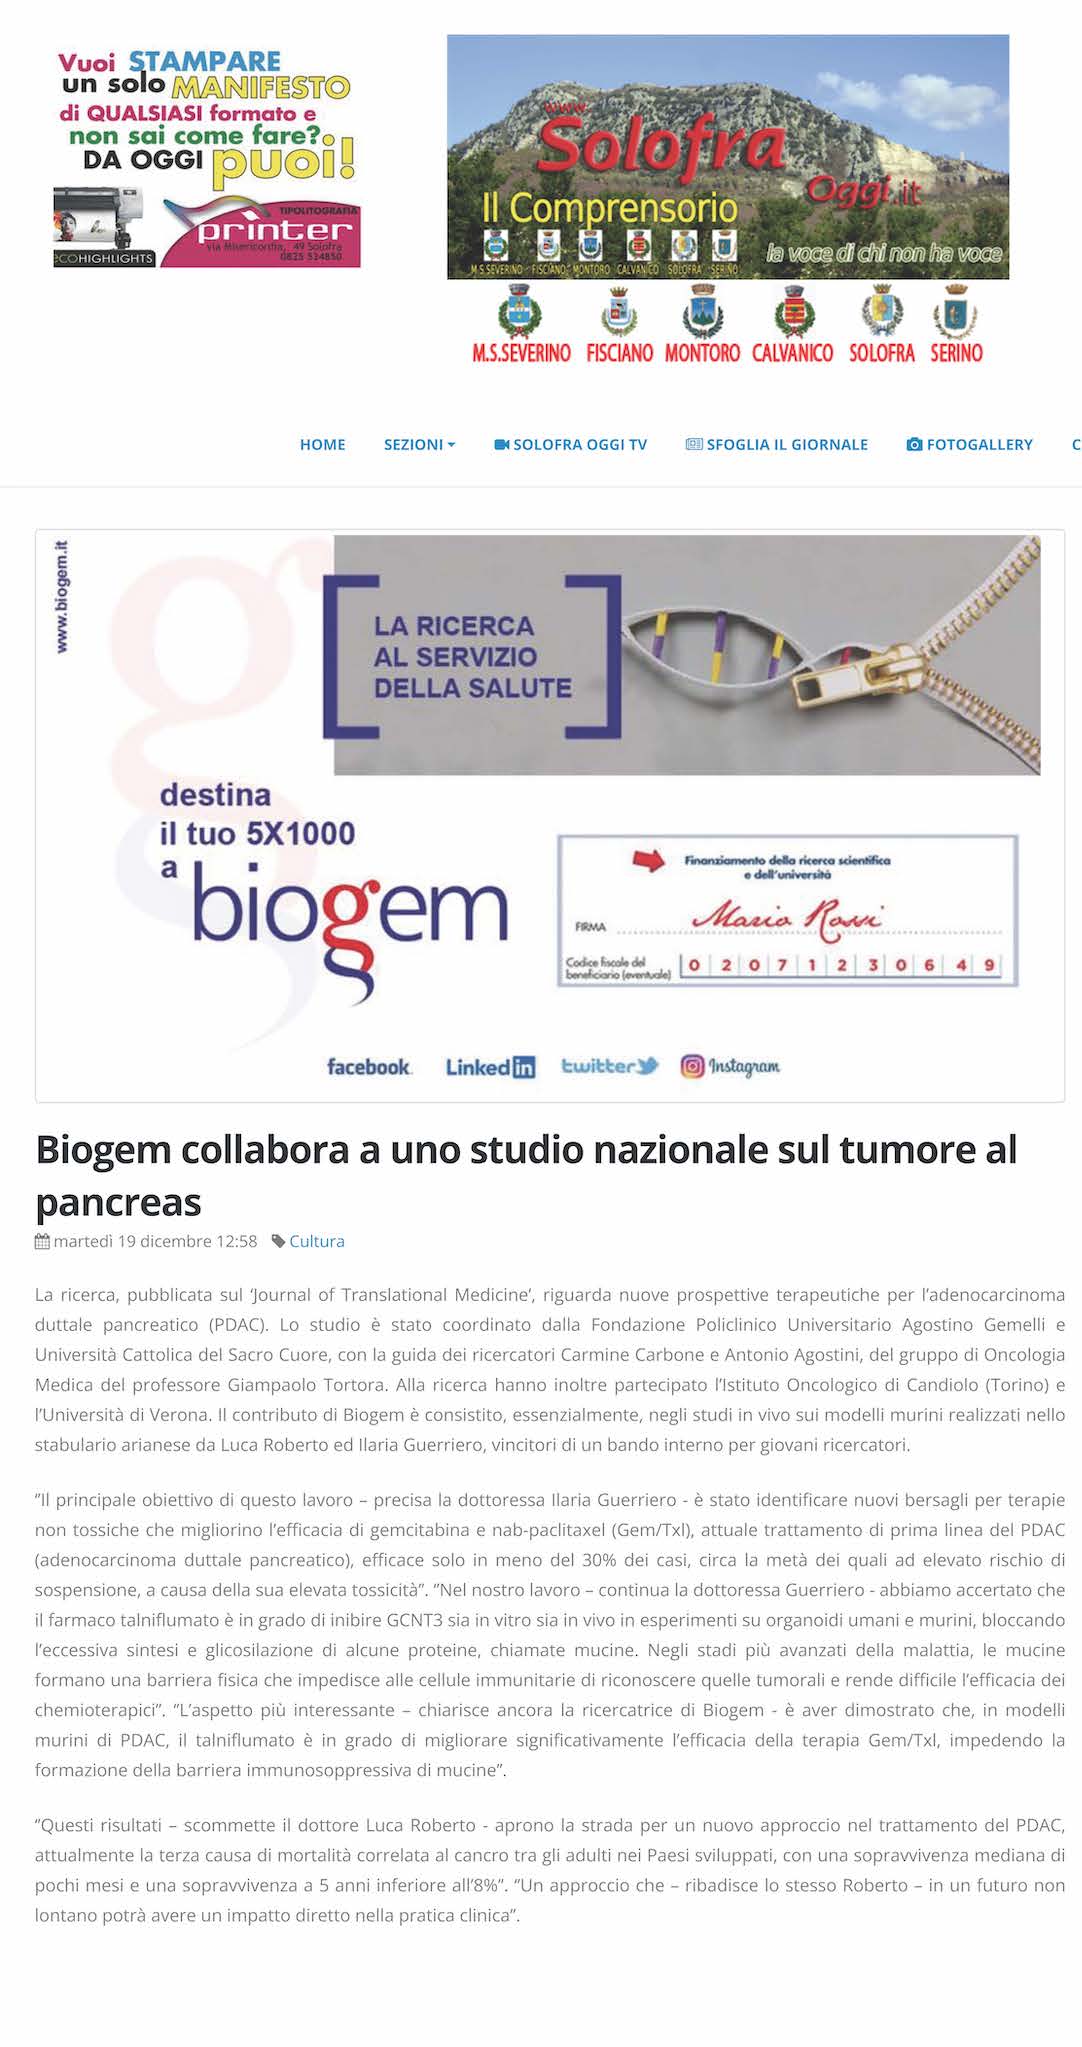 Biogem collabora a uno studio nazionale sul tumore al pancreas